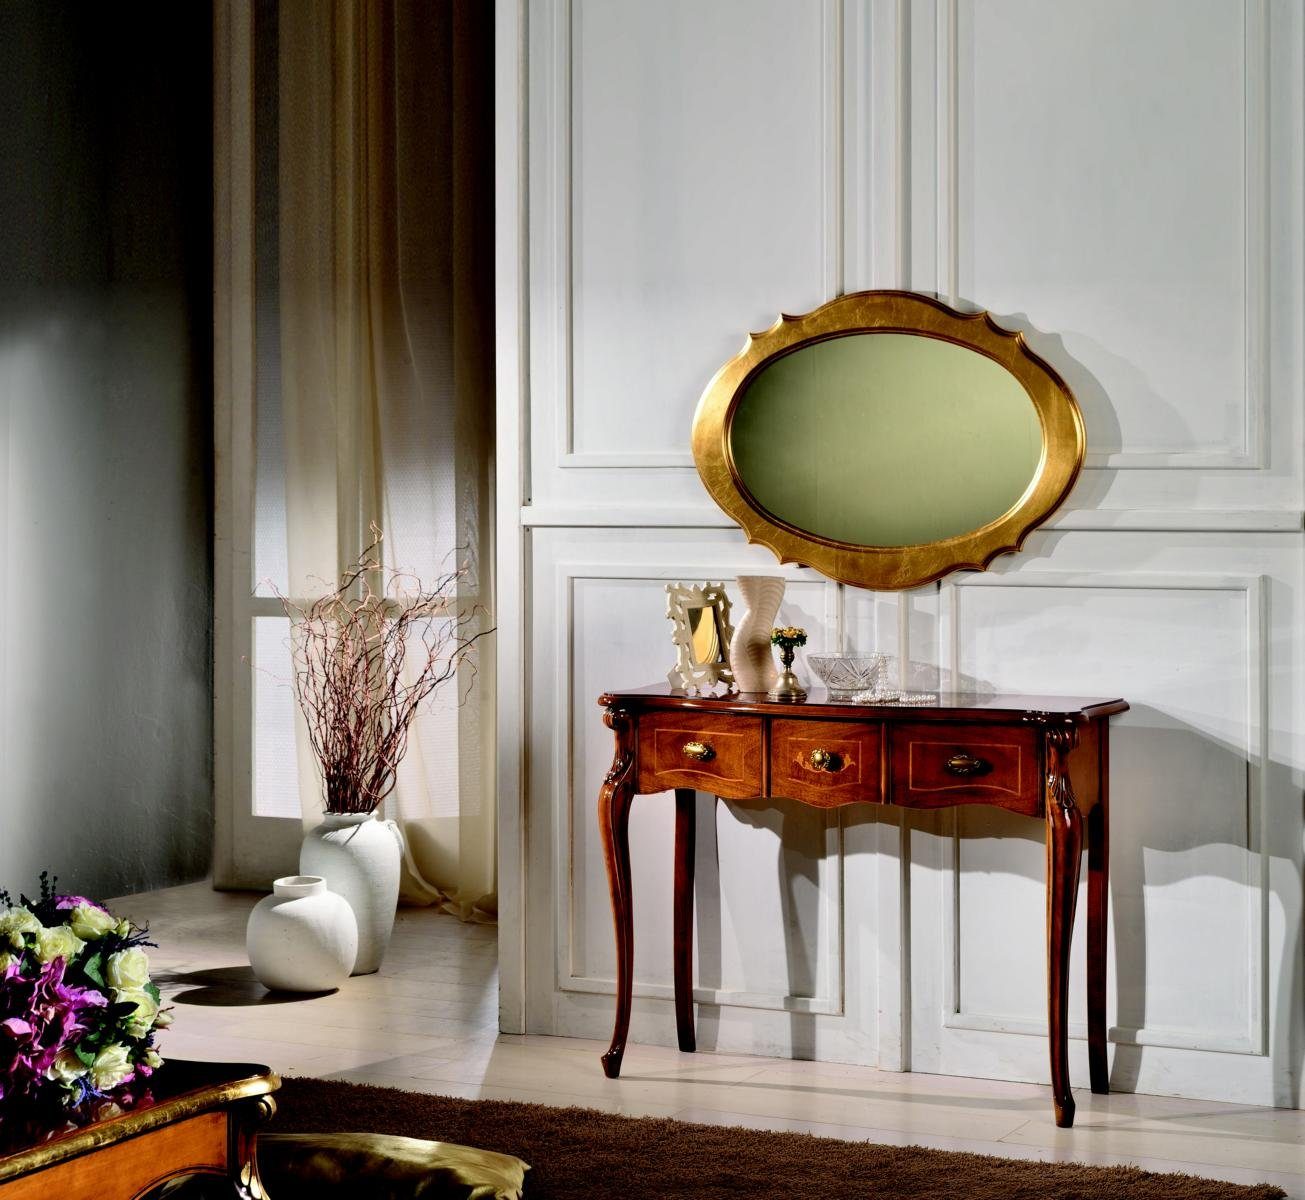 JVmoebel Wohnzimmer-Set Möbel Stil Barock Konsolentisch Spiegel Holz Italienische Tische Gruppe 2tlg Set